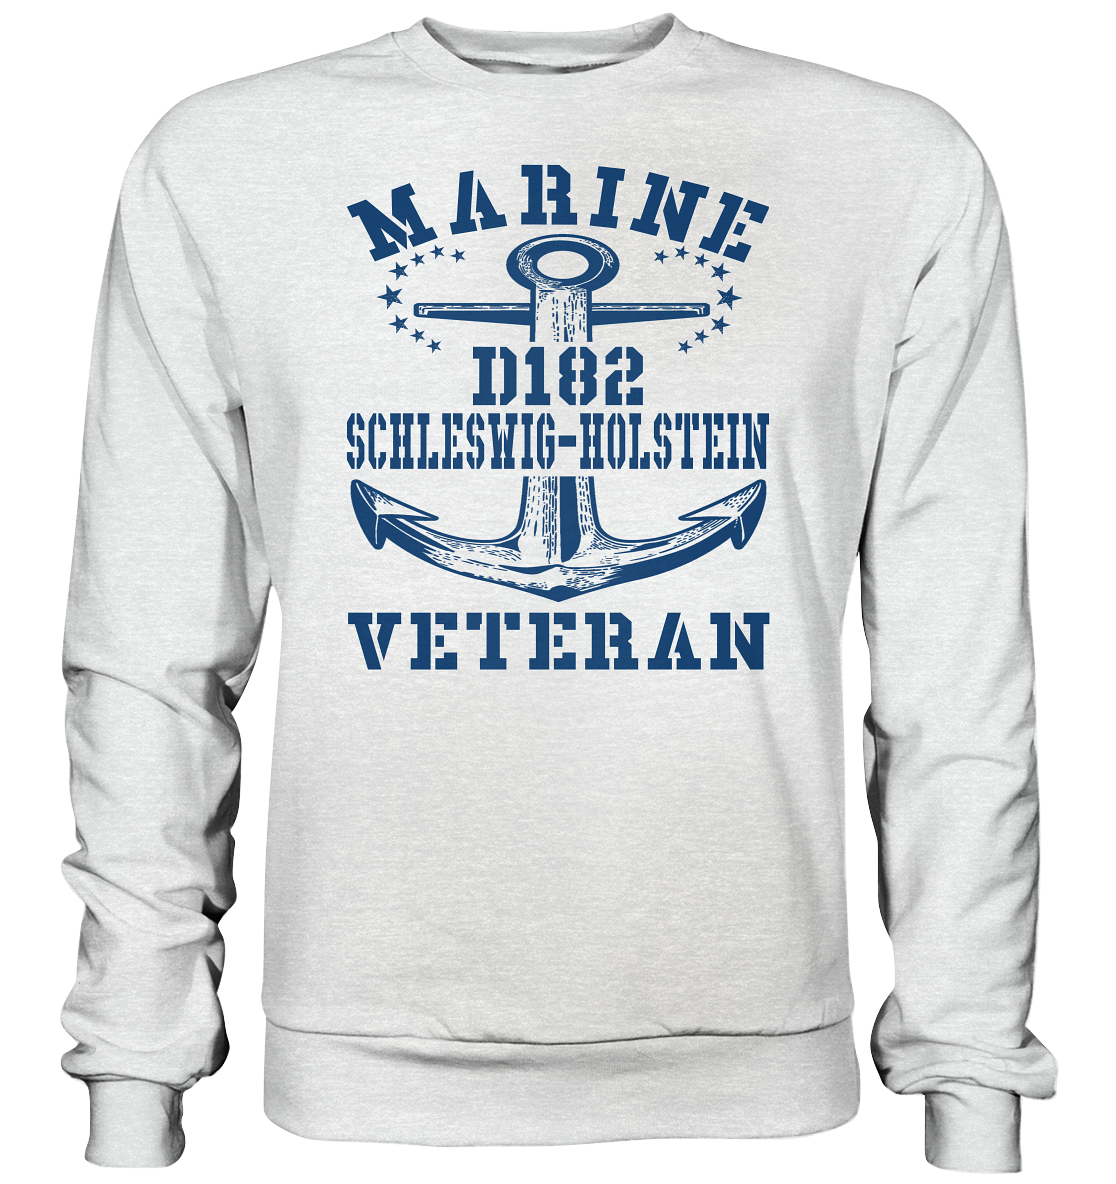 Zerstörer D182 SCHLESWIG-HOLSTEIN Marine Veteran  - Premium Sweatshirt